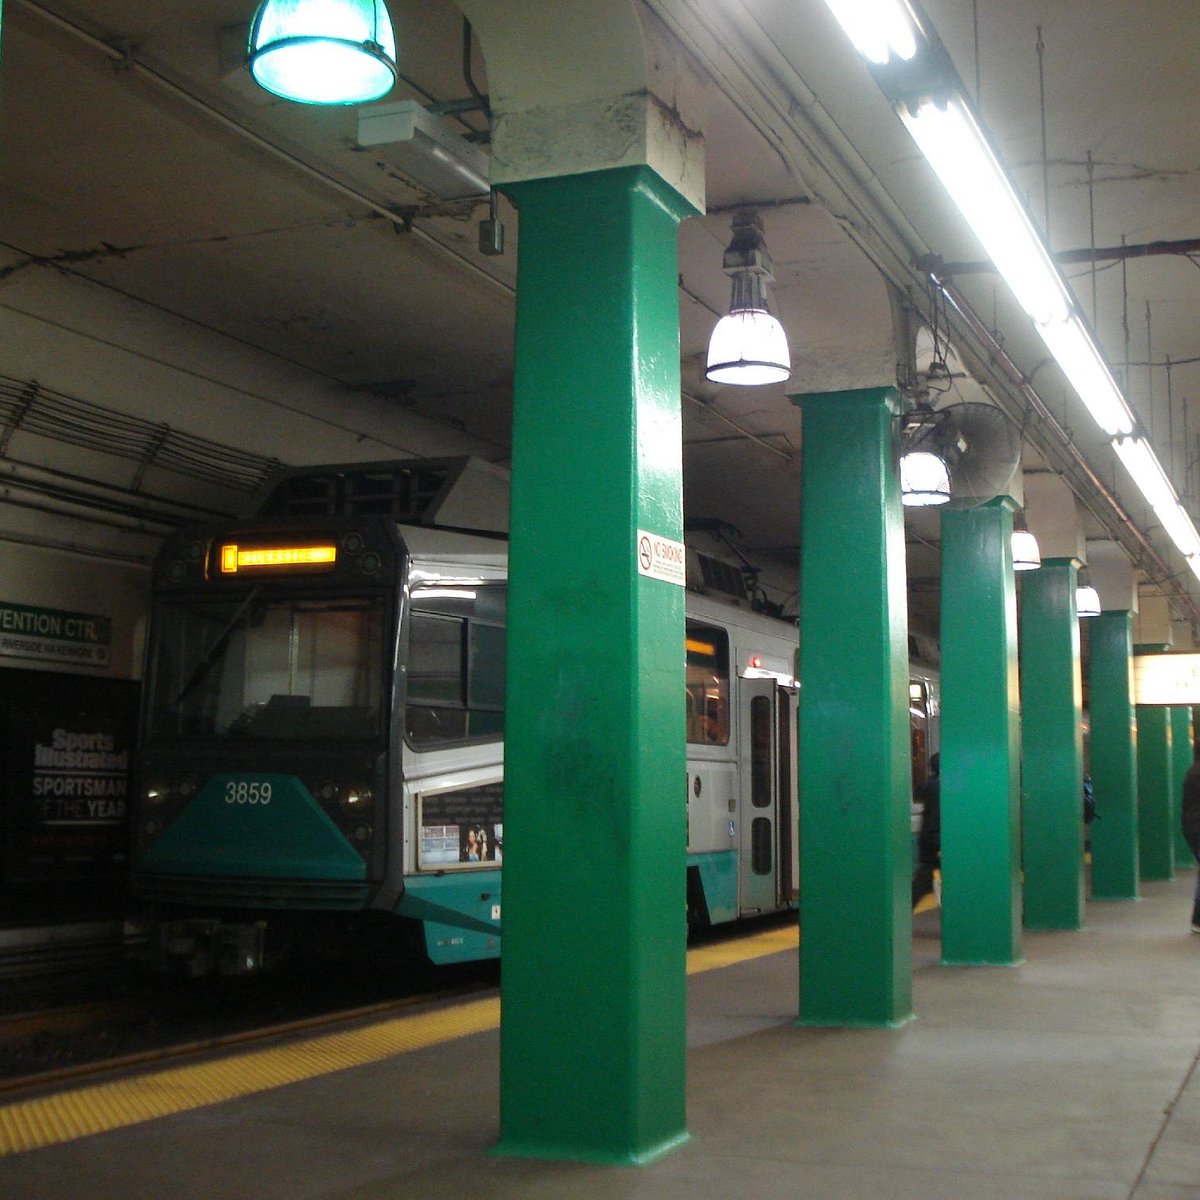 Massachusetts Bay Transportation Authority: Khám phá vẻ đẹp của hệ thống giao thông công cộng tại Boston với Massachusetts Bay Transportation Authority - một trong những công ty điều hành xe buýt, tàu điện ngầm và tàu điện trên cao lớn nhất nước Mỹ. Hình ảnh này sẽ khiến bạn muốn khám phá và tìm hiểu thêm về thành phố Boston và hệ thống giao thông công cộng của nó.